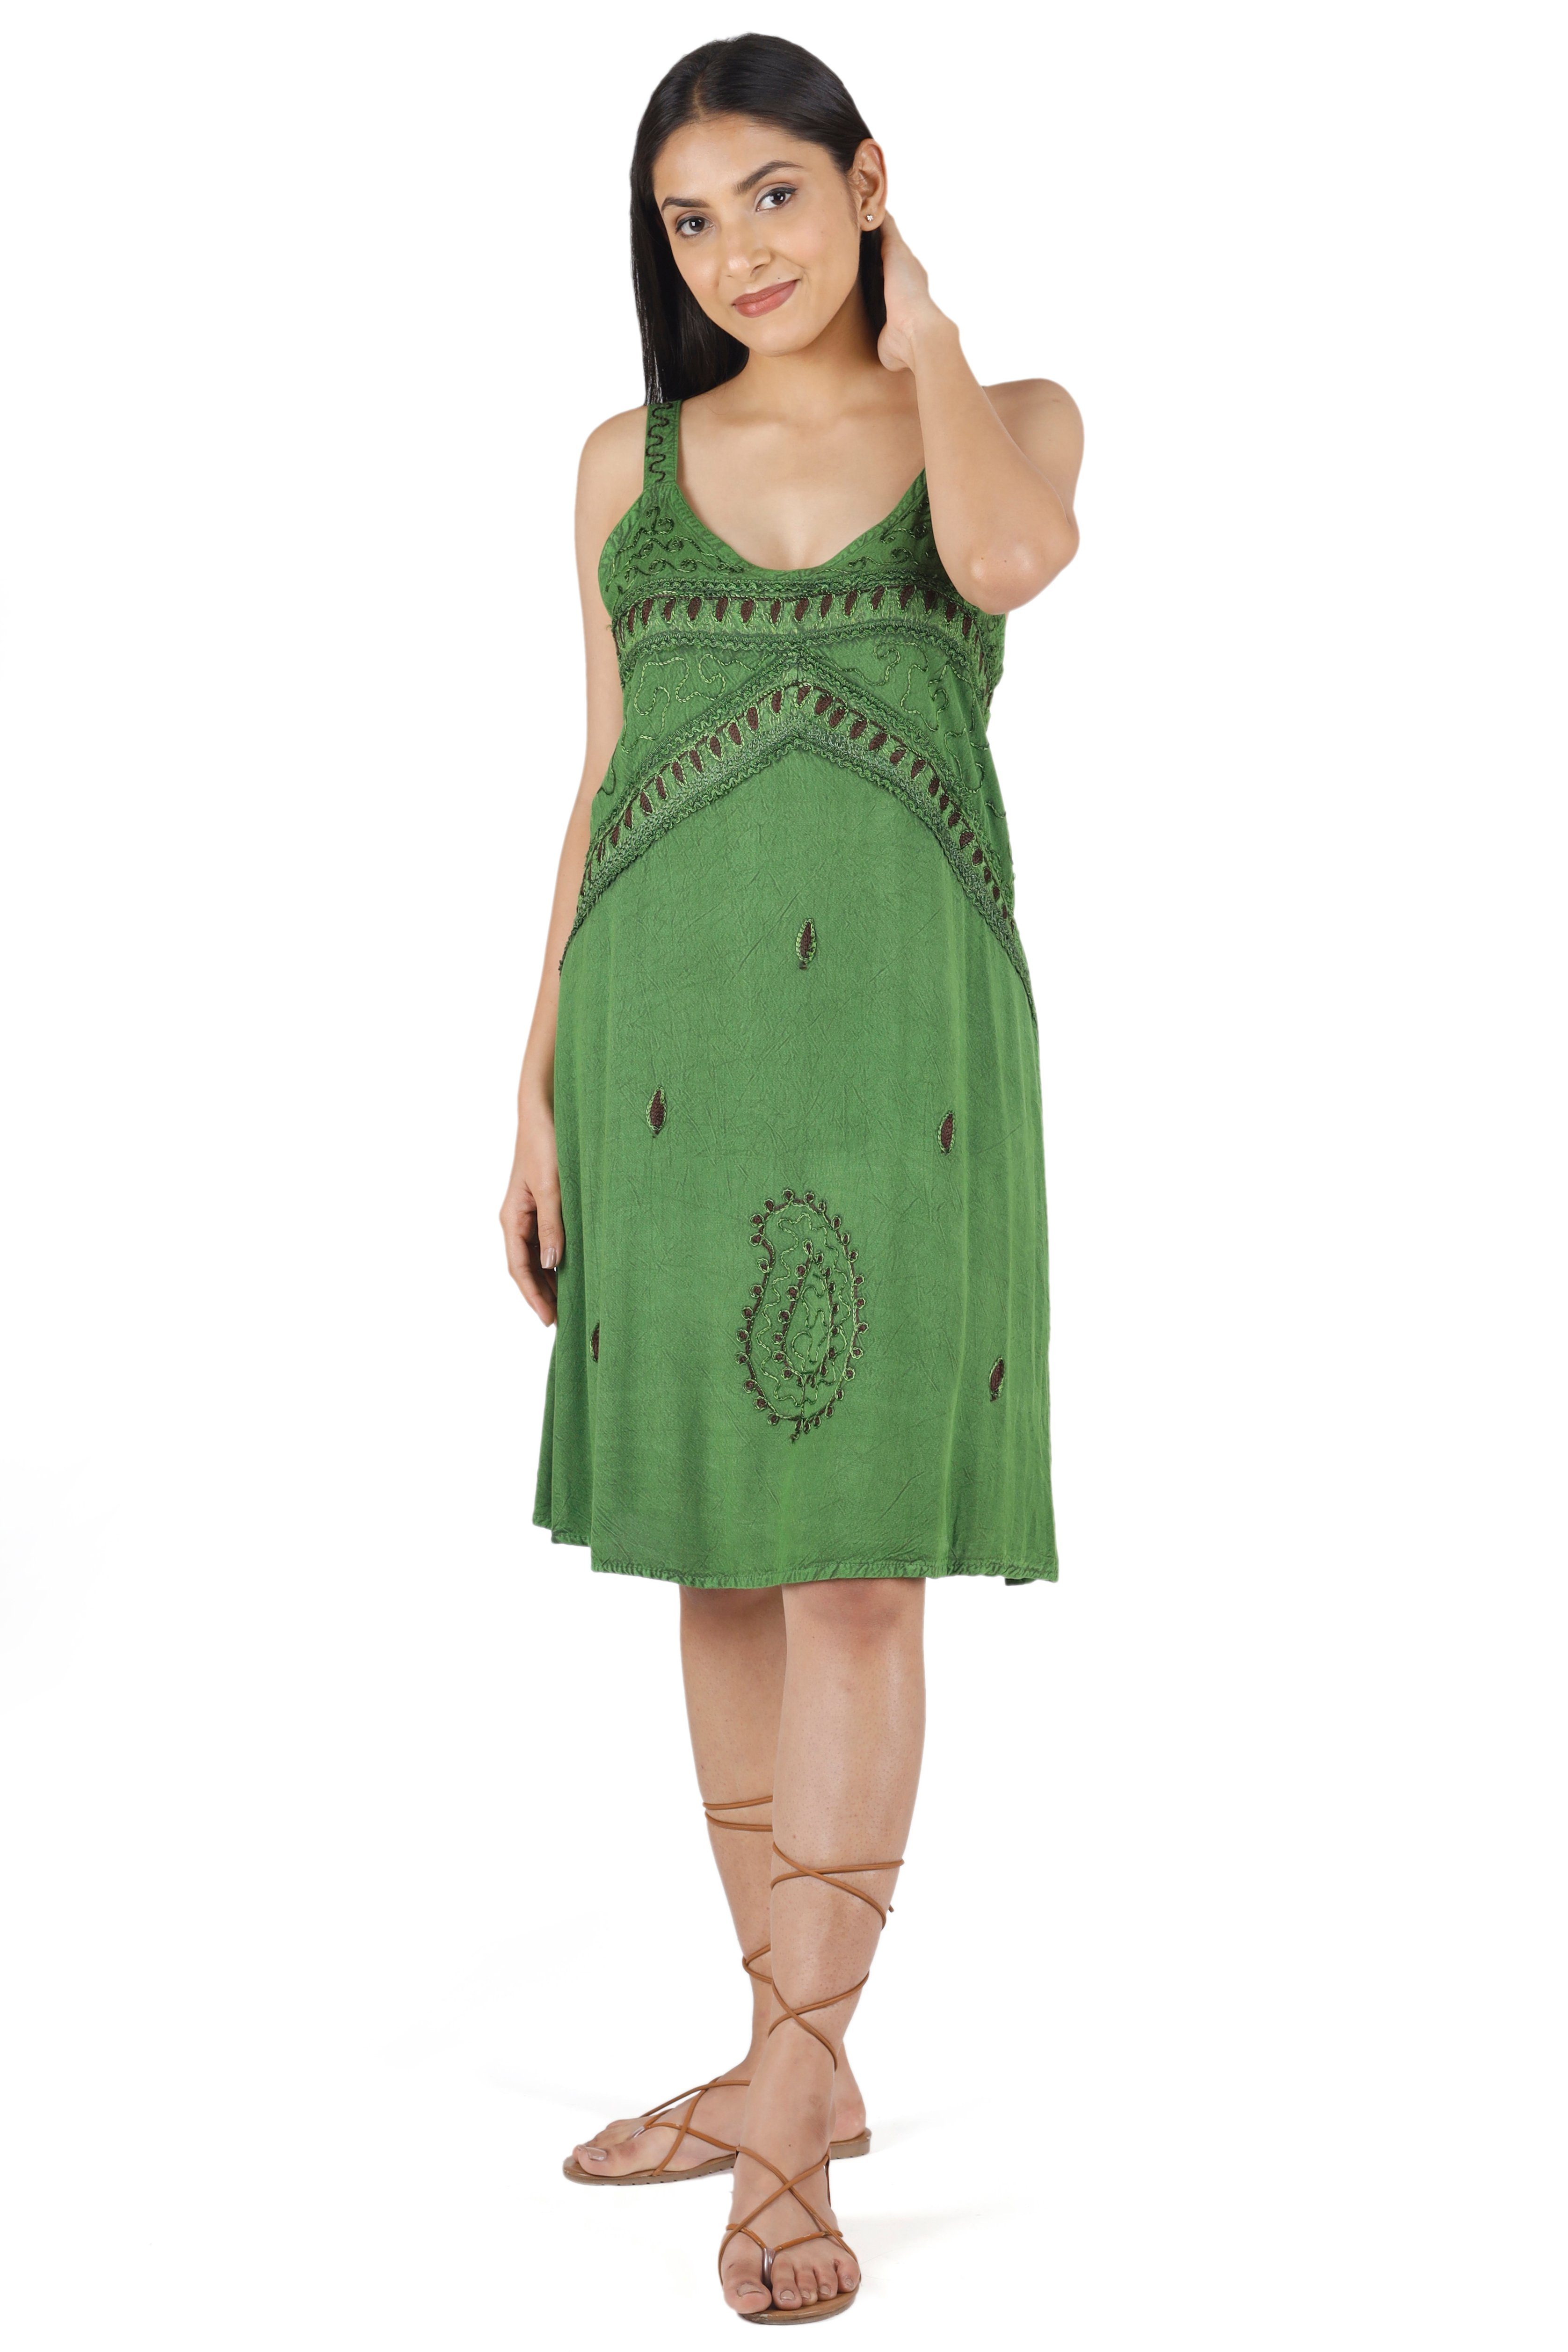 alternative Midikleid Boho grün Design -.. 1 Minikleid Bekleidung Besticktes indisches Kleid, Guru-Shop